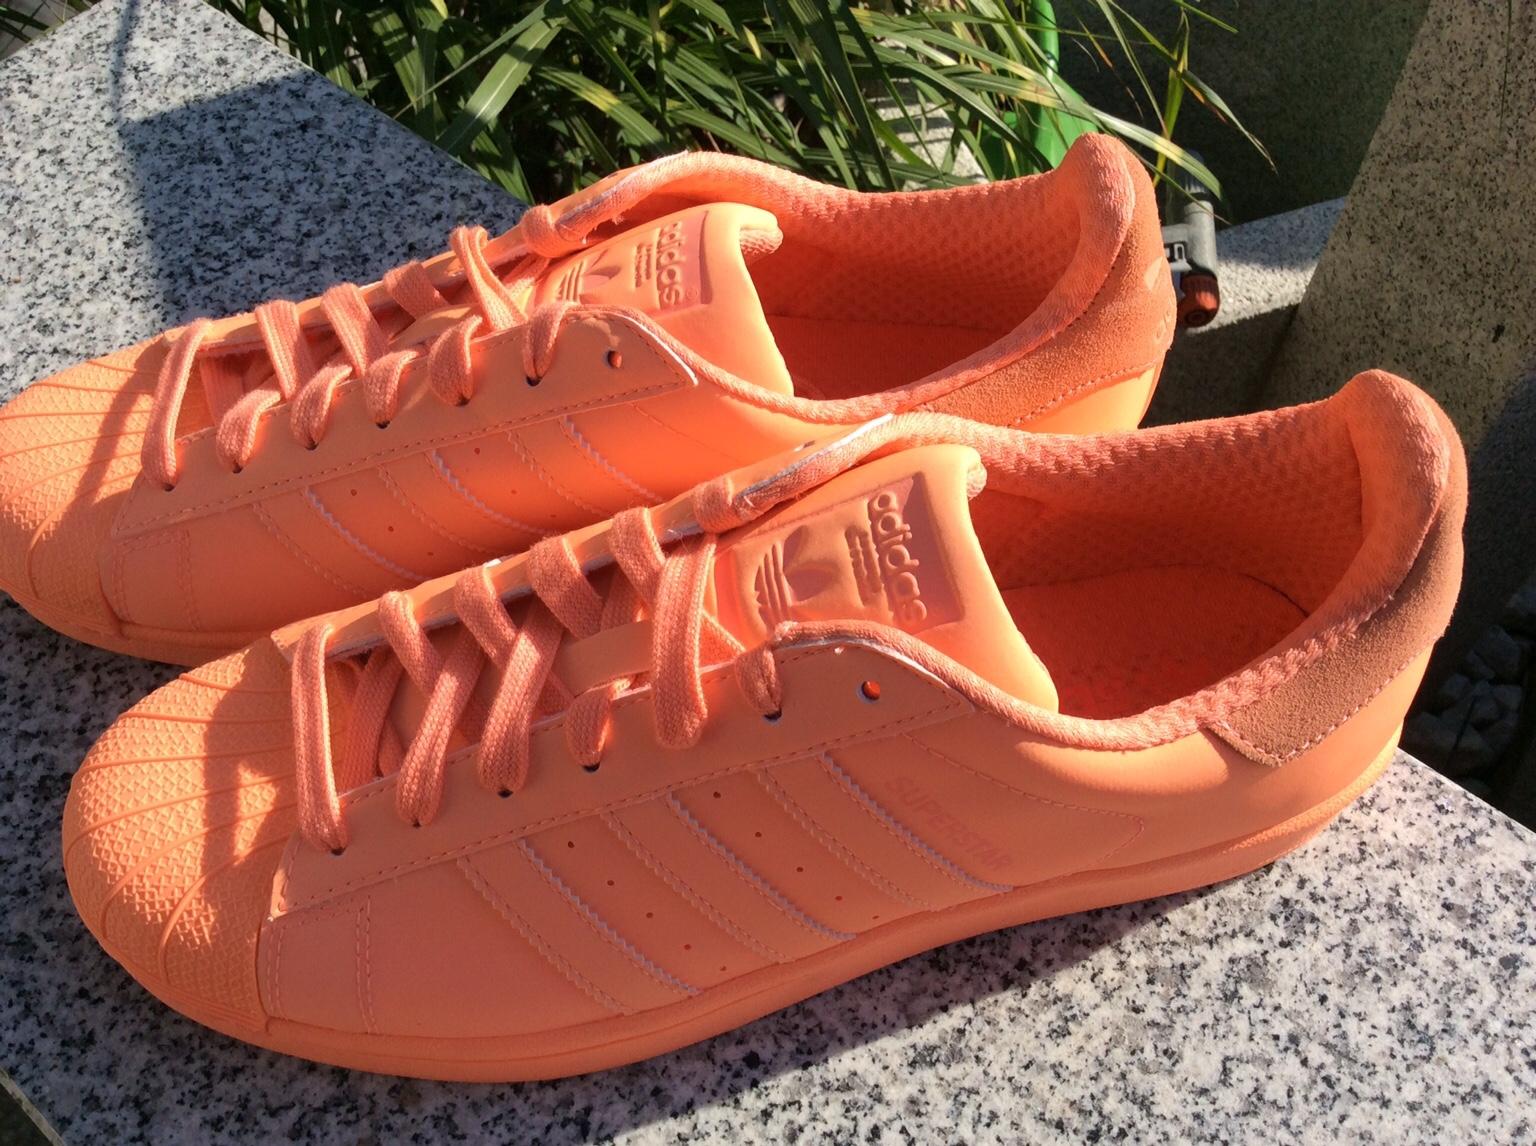 adidas superstar neon orange - 59 